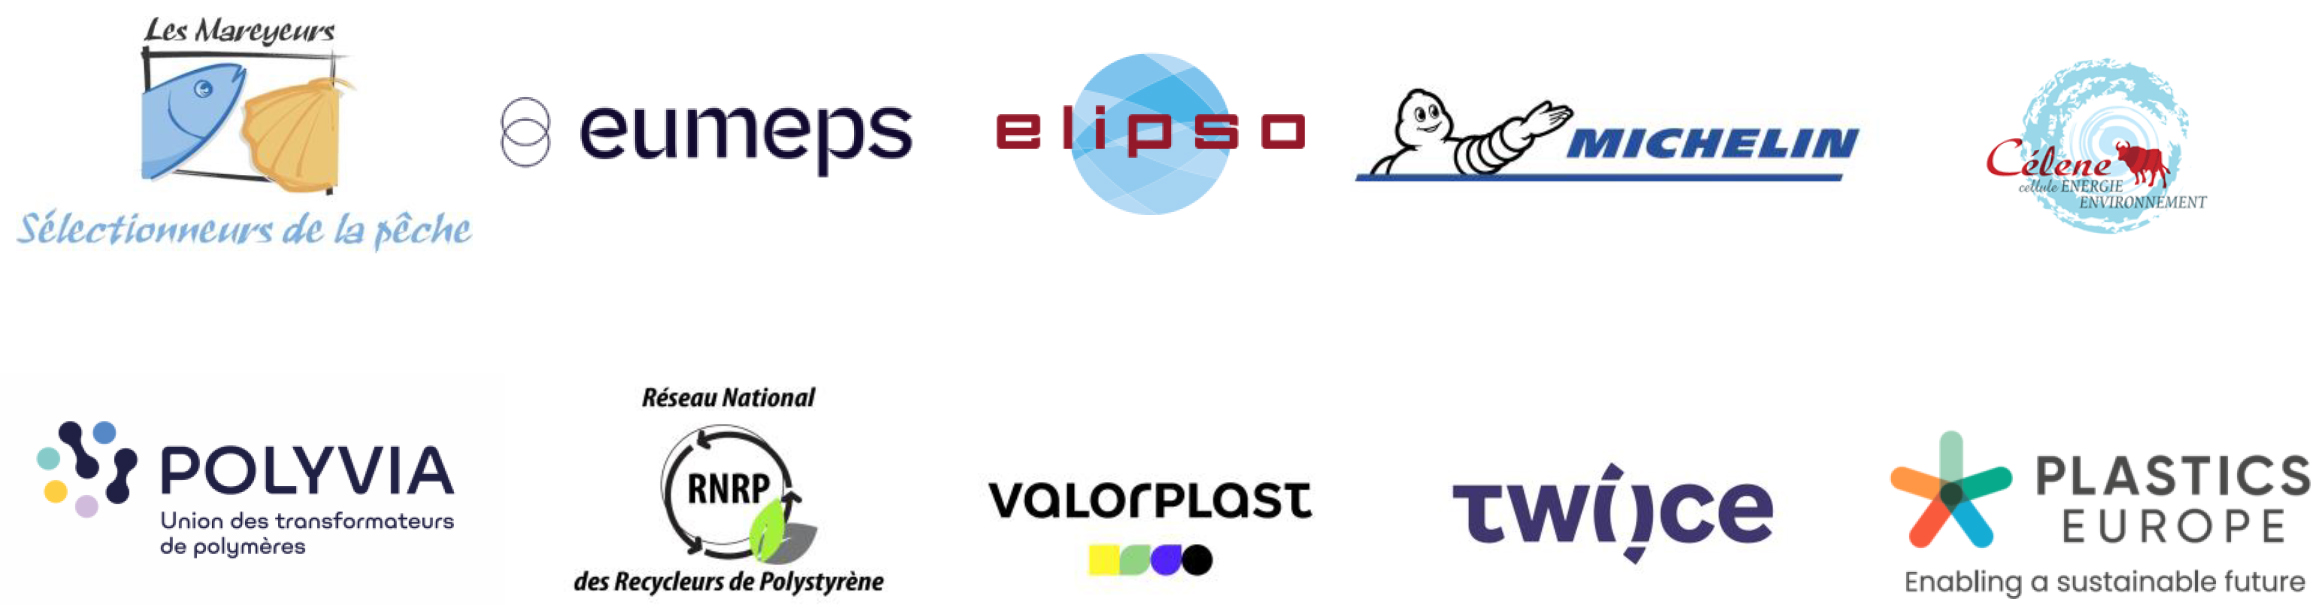 Logos partenaires creastyr - Elipso